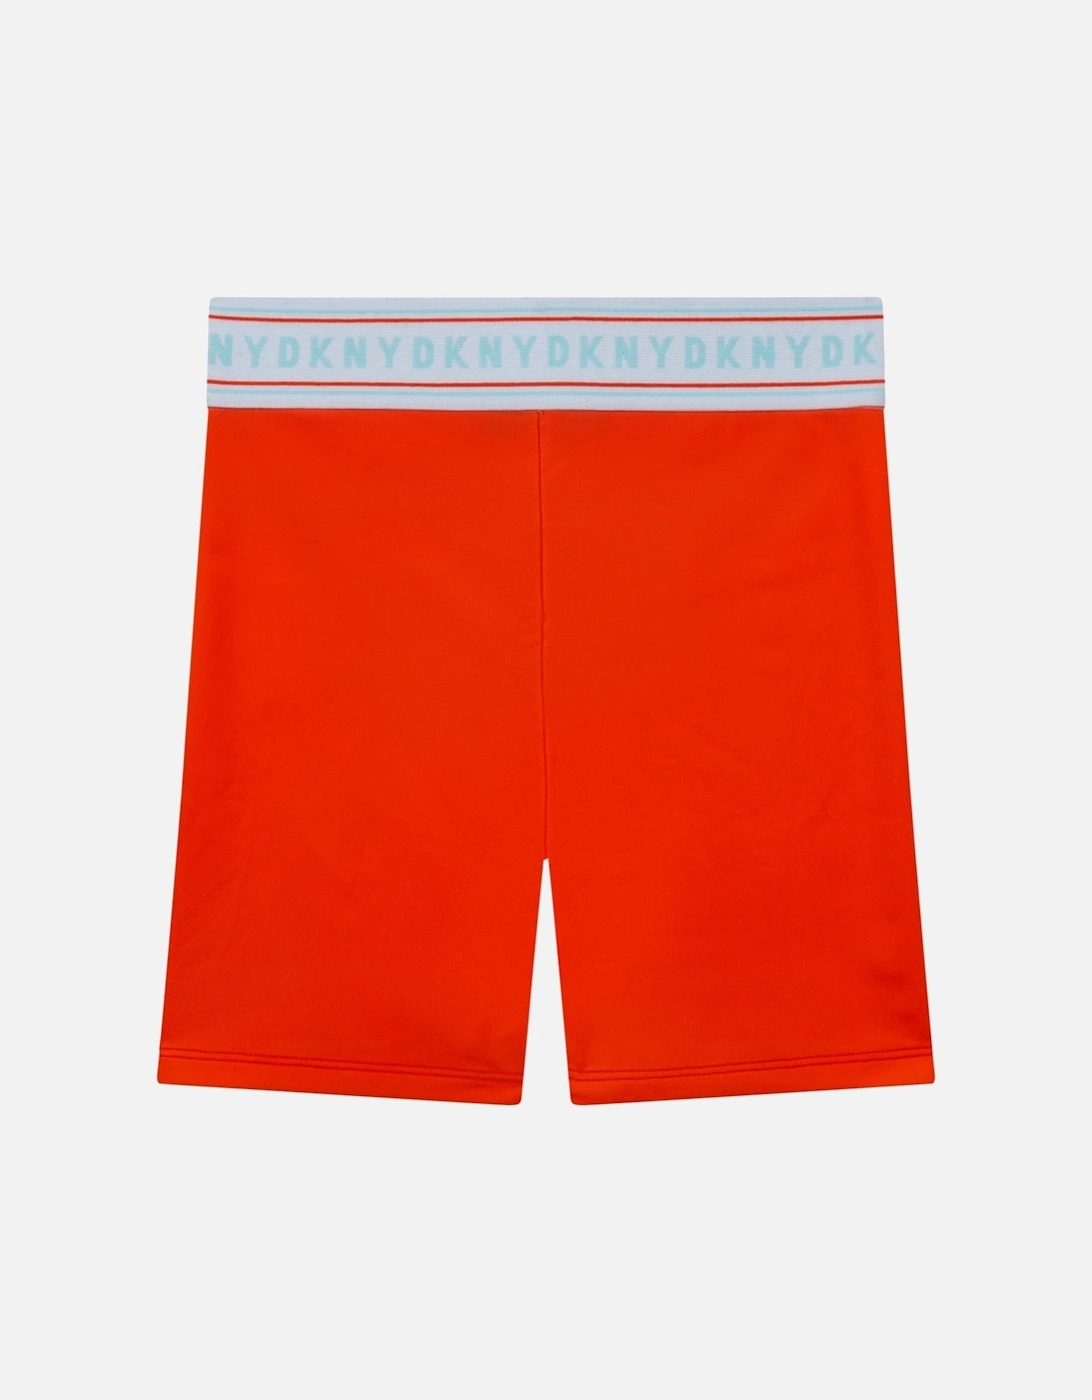 Orange Bicycle Shorts, 4 of 3